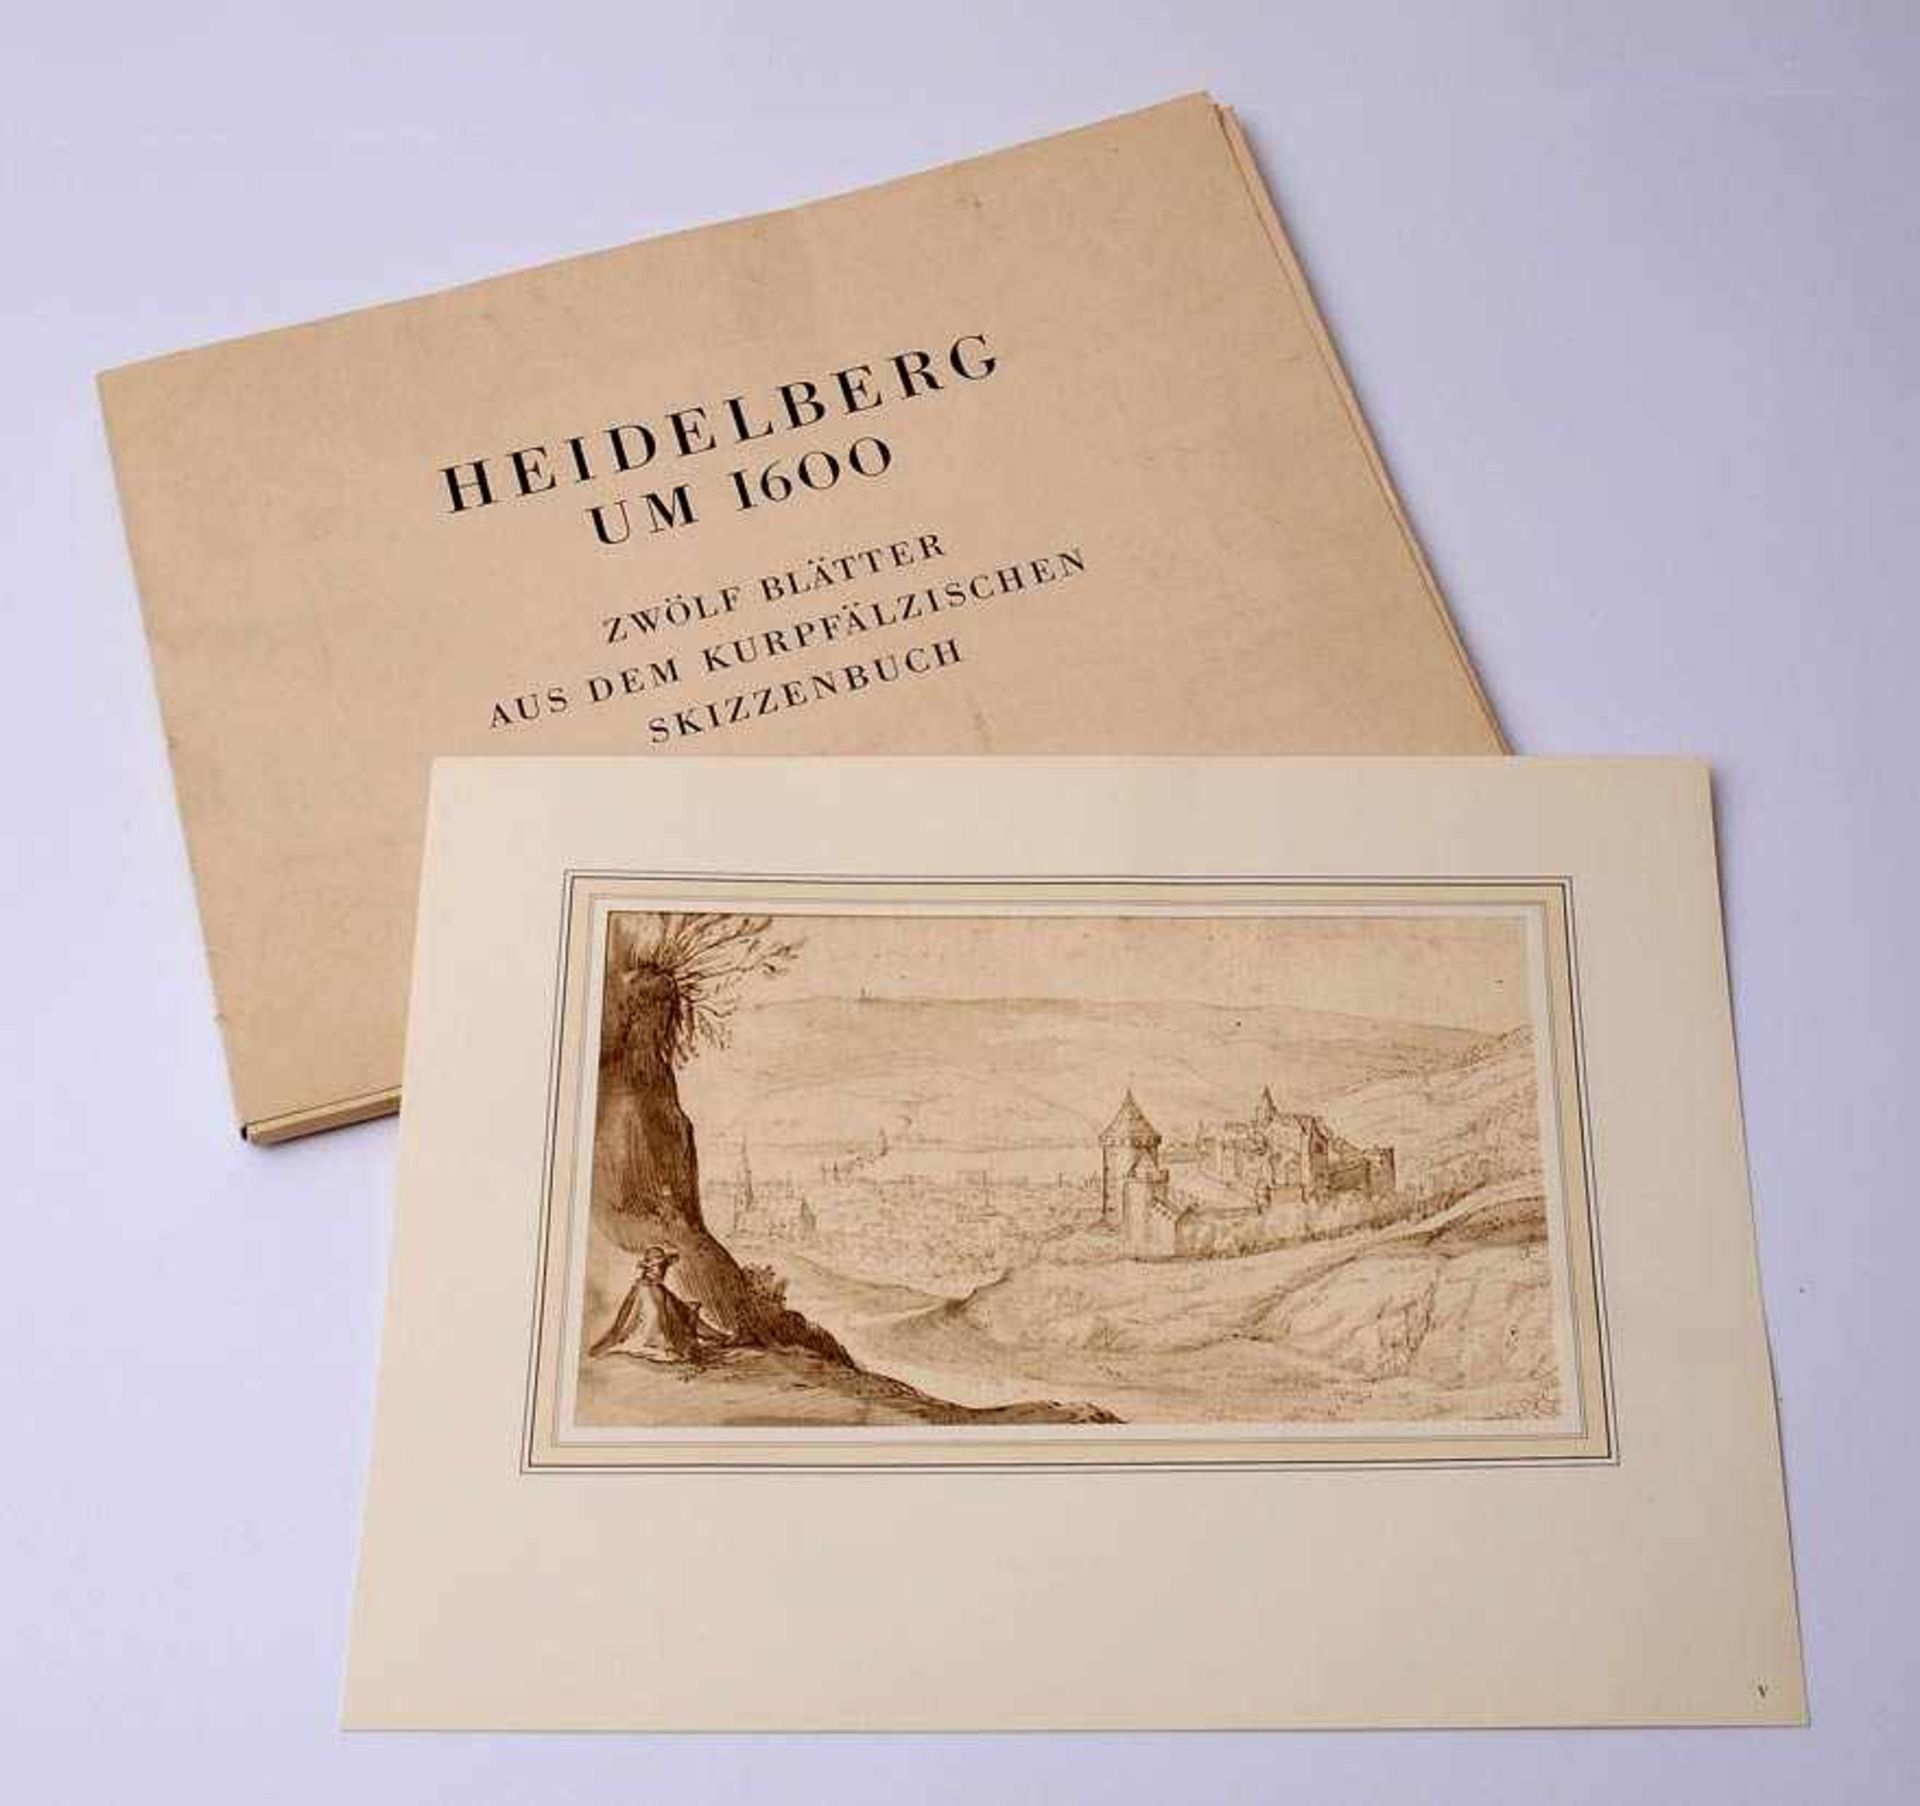 Heidelberg um 1600Zwölf Blätter aus dem Kurpfälzischen Skizzenbuch (Faksimile), gedruckt bei